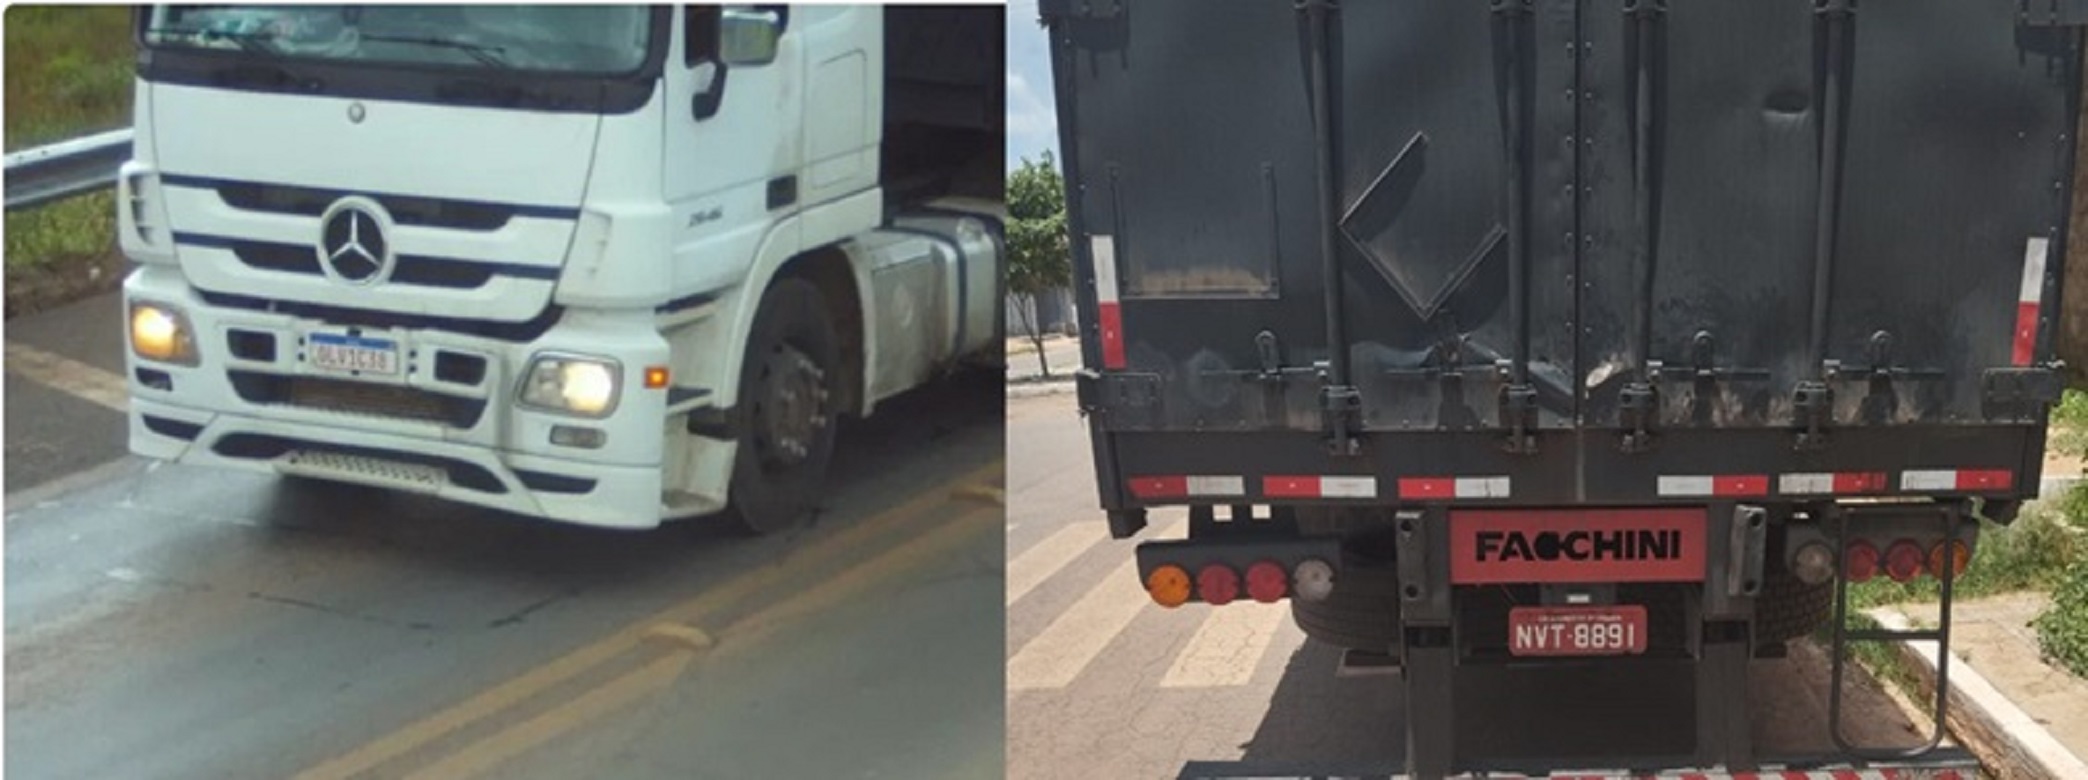 Caminhoneiro desaparecido, Polícia procura motorista após roubo de carga no Piauí